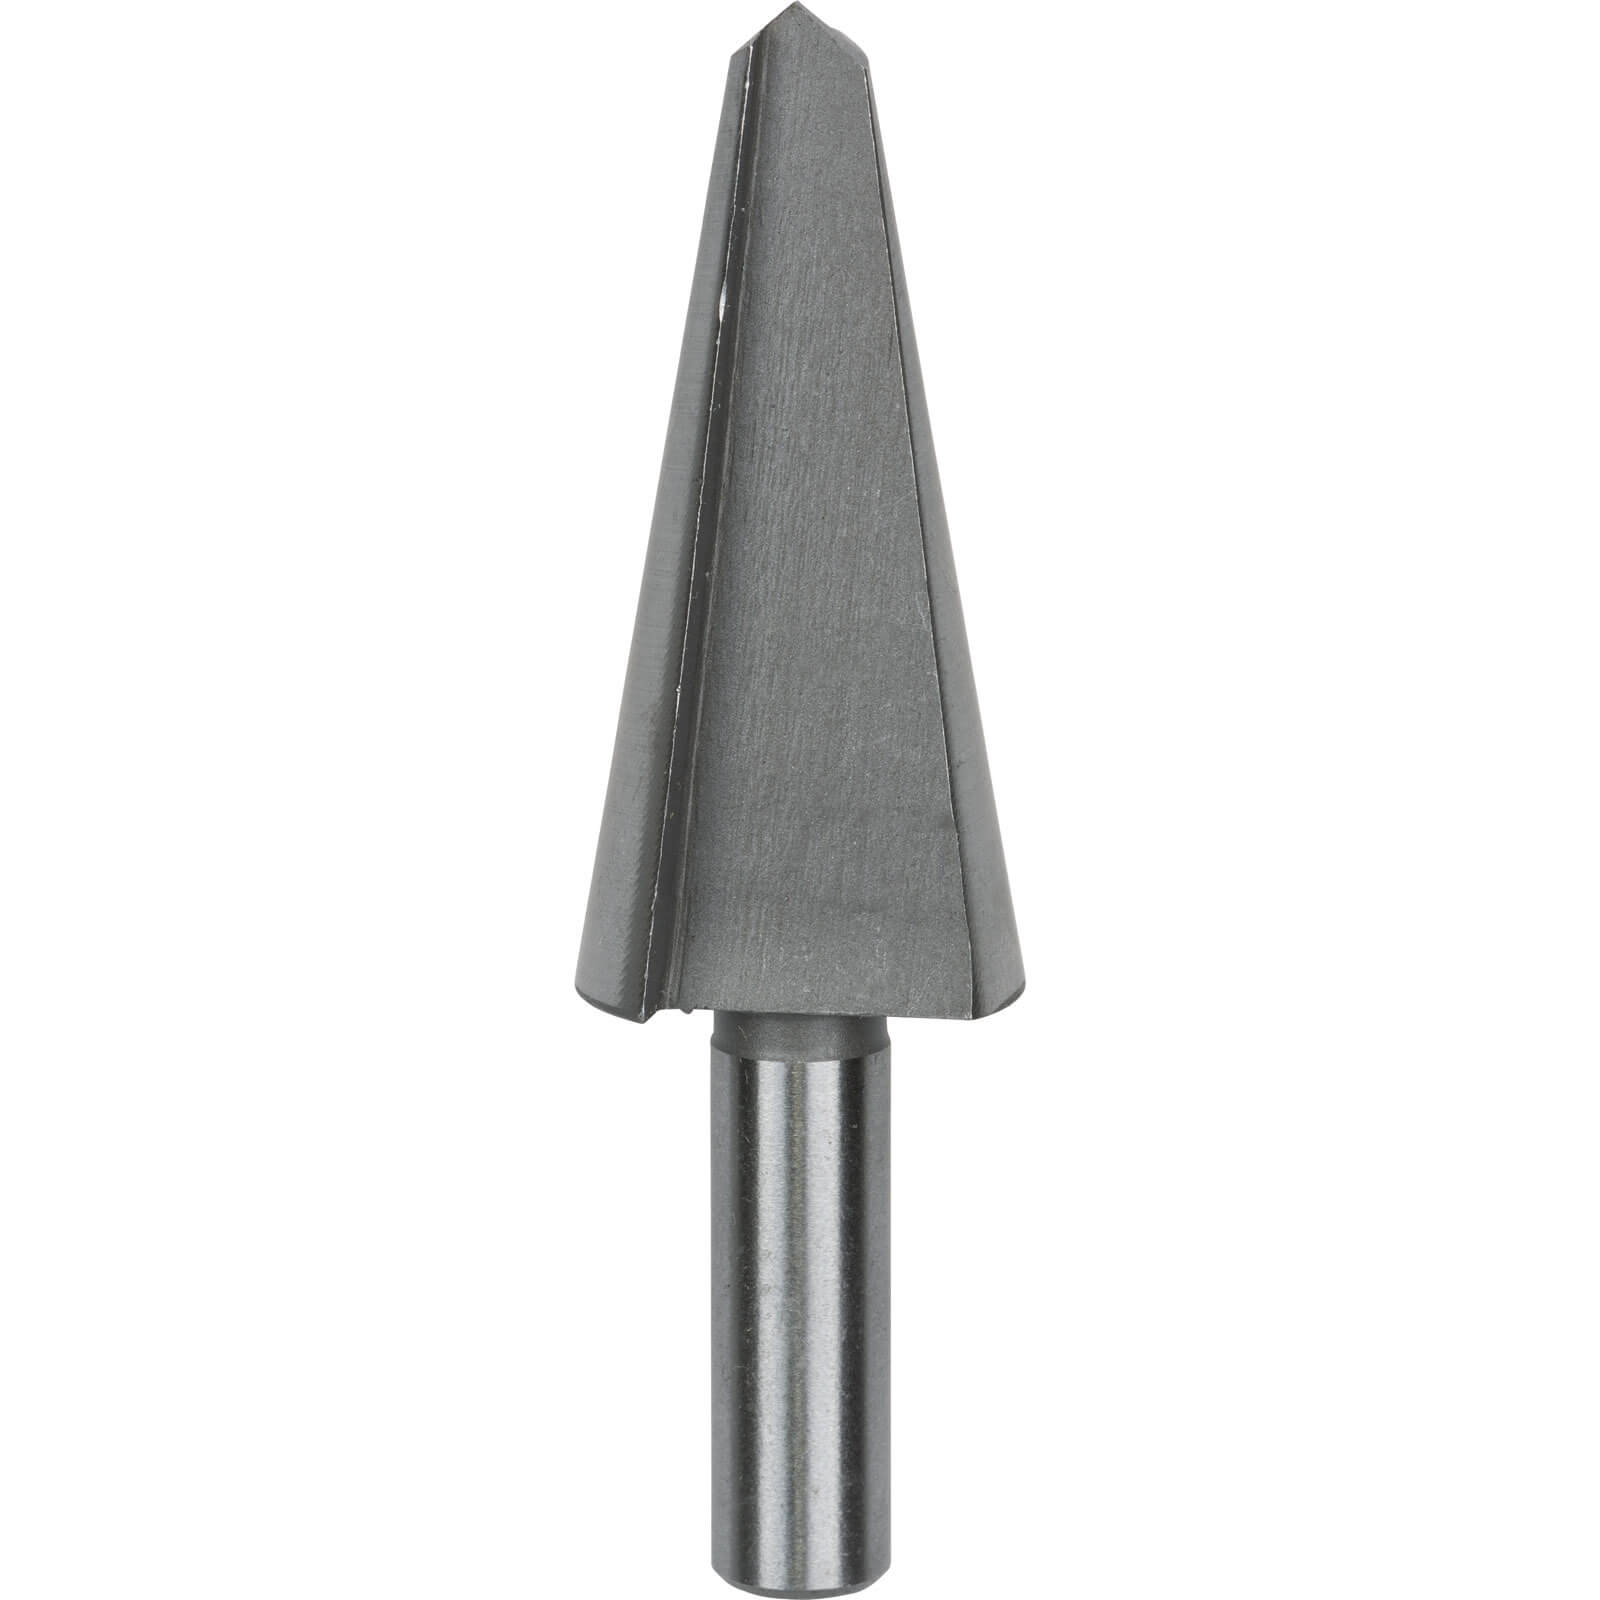 Photo of Bosch Hss Sheet Metal Cone Cutter Drill Bit 5mm - 20mm